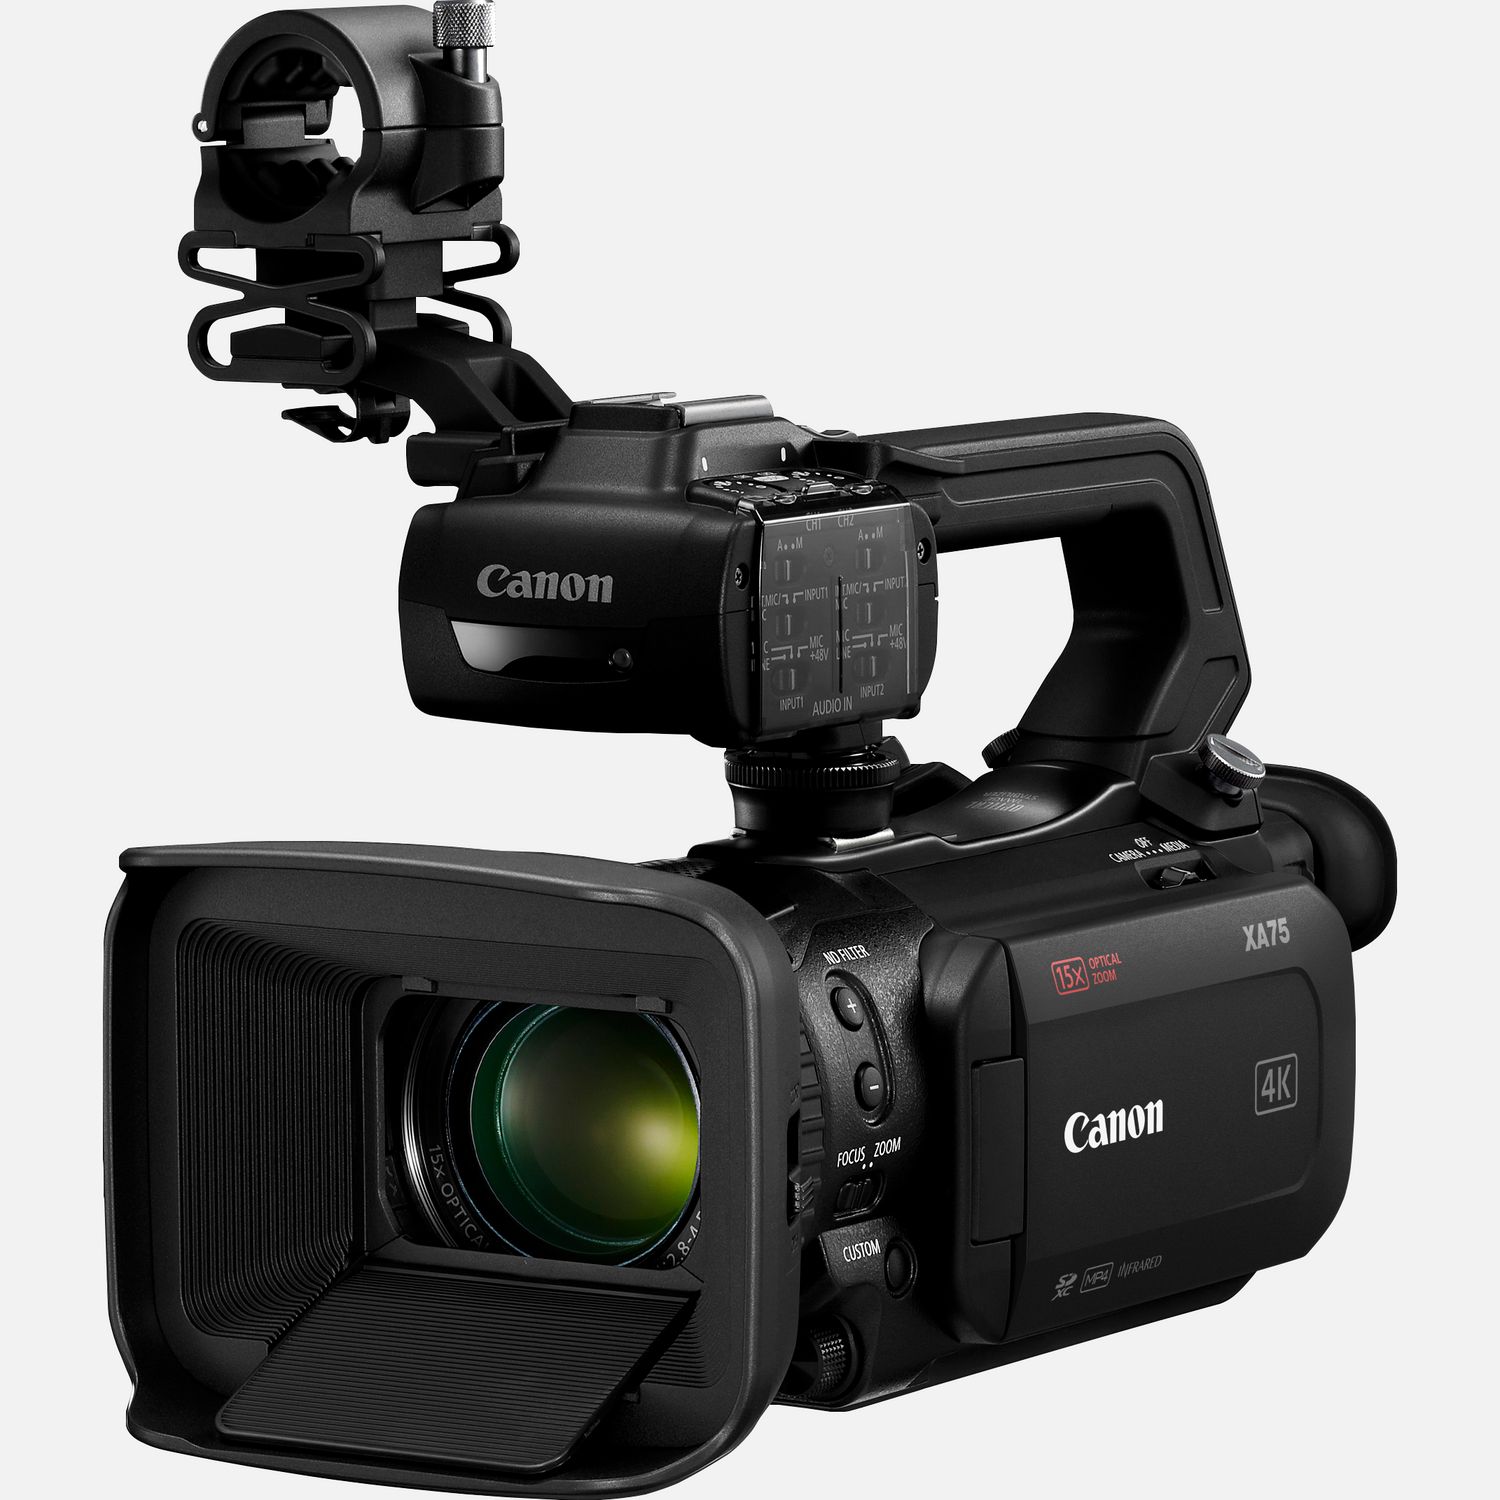 Die Canon XA75 ist eine professionelle 4K-Videokamera, die viele professionelle Funktionen in einem kompakten Gehuse vereint. Dieser professionelle Camcorder eignet sich fr Dokumentarfilme, Journalismus und viele andere Anwendungen. Er passt in eine Handflche und ist intuitiv bedienbar. Dabei lassen sich alle Bedienelemente leicht mit Daumen und Fingern erreichen. Mit Oversampling werden erstklassige FullHD Videos erstellt, und der Dual Pixel CMOS AF und das Canon Objektiv mit optischem 15fach-Zoom sorgen stets fr scharfe und przise Ergebnisse. Und wenn du deine Inhalte live bertragen willst, bietet der Camcorder HD-Livestreaming mit UVC via USB-C ber einen Computer. Hochwertige 4K UHD Videos  im XF-AVC- oder MP4-Format  lassen sich dank der 3G-SDI- und HDMI-Ausgnge problemlos in einen breiteren professionellen Workflow einbinden.  Vorteile      Der 4K 1,0-Zoll-Typ CMOS-Sensor und der DIGIC DV6 Bildprozessor sorgen fr atemberaubende 4K UHD- und hervorragende FullHD-Aufnahmen. Durch Oversampling der Sensordaten liefert der Camcorder auch erstklassige FullHD-Videos.          Das Canon Objektiv deckt einen Brennweitenbereich von 25,5 bis 382 mm (quivalent KB-Vollformat) ab. Der Digitalzoom liefert eine 300-fache Vergrerung mit 5-Achsen-Bildstabilisierung.          Die einstellbare Fokussiergeschwindigkeit und der Dual Pixel CMOS AF ermglichen eine schnelle und przise Fokussierung.          Auf dem 3,5-Zoll LC-Display kannst du den gewnschten Fokuspunkt per Berhrung festlegen. Gesichtserkennungs-AF und Gesichtsverfolgung sind verfgbar, whrend der Fokus-/Zoomring die manuelle Fokussierung ermglicht.          Als Aufnahmeformat kannst du zwischen XF-AVC und MP4 whlen. XF-AVC 4K UHD 160 Mbit/s wird mit 25p aufgenommen und FullHD 45 Mbit/s mit 50p/ 50i/ 25p. Wenn kleinere Dateien gewnscht werden, stehen MP4 4K mit 150 Mbit/s und 25p sowie Full HD mit 35/17 Mbit/s und 50p/25p zur Verfgung.          Zu den Aufnahmeoptionen gehren 3G-SDI, HDMI und USB-C, die gleichzeitige Backup- und fortlaufende Aufzeichnung ber zwei SD-Karten sowie der Infrarot-Modus.          Auerdem stehen Zeitlupenaufnahmen in Full HD mit halber Geschwindigkeit oder Zeitrafferaufnahmen in 4K/Full HD mit bis zu 1.200-facher Geschwindigkeit zur Verfgung. Infrarot-Modus fr Aufnahmen bei extrem wenig Umgebungslicht. Eine Farbabstimmung mit anderen Canon Kameras ist ber das Men fr benutzerdefinierte Bildeinstellungen mglich.          Du kannst HD-Videos via UVC mit einem Computer live streamen und bei Bedarf auch einen Datums- und Zeitstempel einblenden. Zwei XLR-Anschlsse am abnehmbaren Griff und 4-Kanal-Linear-PCM bieten zudem professionelle Audiooptionen.          Lieferumfang       XA75 professioneller Camcorder         Tragegriff HDU-1         PD-E1 USB-Netzadapter         BP-820 Akku         Streulichtblende mit integriertem Objektivschutz         Mikrofonhalter              Technische Daten              4K UHD / 25p - MP4 bis 150 Mbit/s, XF-AVC bis 160 Mbit/s                15fach optischer Zoom  25,5 - 382,5mm, 4K Weitwinkel-Zoom                HD-Verarbeitung mit Oversampling  verwendet den 4K UHD-Sensor, um erstklassige Full HD-Bilder zu generieren                Optischer IS  Optimierter optischer 5-Achsen-Bildstabilisator mit Dynamic IS                Infrarot-Modus  Fr hochwertige Videoaufnahmen bei extrem wenig bis gar keinem Umgebungslicht                Touchscreen  3,5-Zoll-Touchscreen fr die intuitive Kamera- und Autofokussteuerung                4-Kanal-Audio  Lineares PCM-Audio und 2 XLR-Eingnge plus integriertes Mikrofon                Zwei Speicherkarten-Steckpltze  Gleichzeitige oder fortlaufende Aufzeichnung auf SD-Karte                USB-C - Livestreaming per Mac oder PC oder mit dem Canon GP-E2 GPS-Empfnger          Alle technischen Daten zeigen